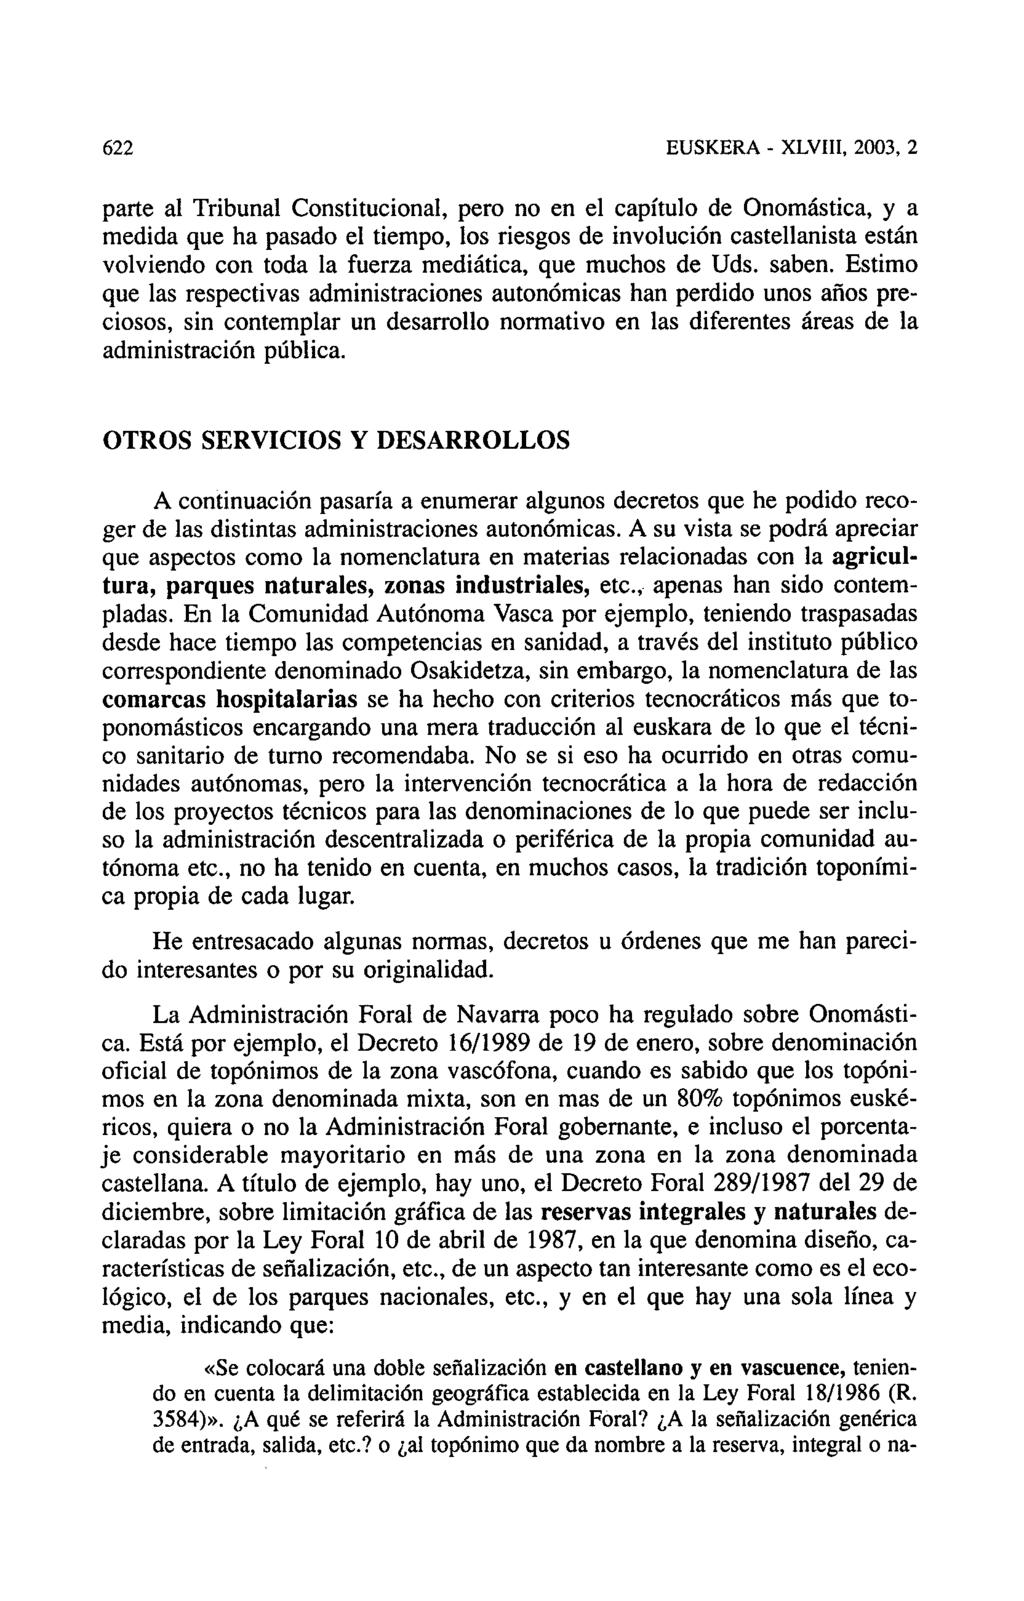 622 EUSKERA - XLVIII, 2003, 2 parte al Tribunal Constitucional, pero no en el capítulo de Onomástica, y a medida que ha pasado el tiempo, los riesgos de involución castellanista están volviendo con